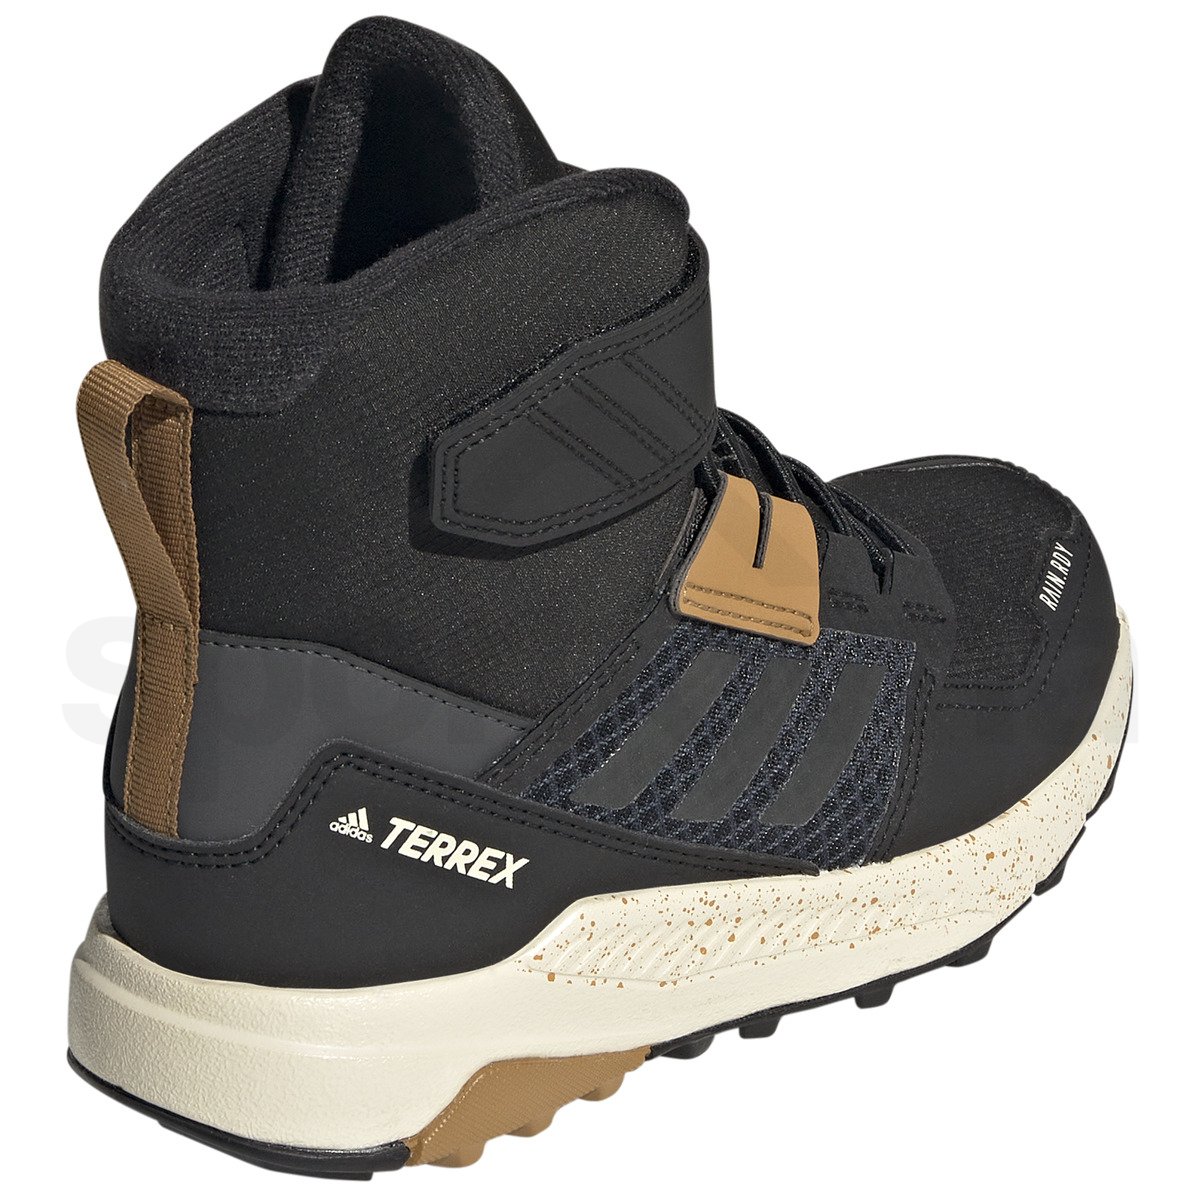 Obuv Adidas Terrex Trailmaker High Cold Rdy J - černá/šedá